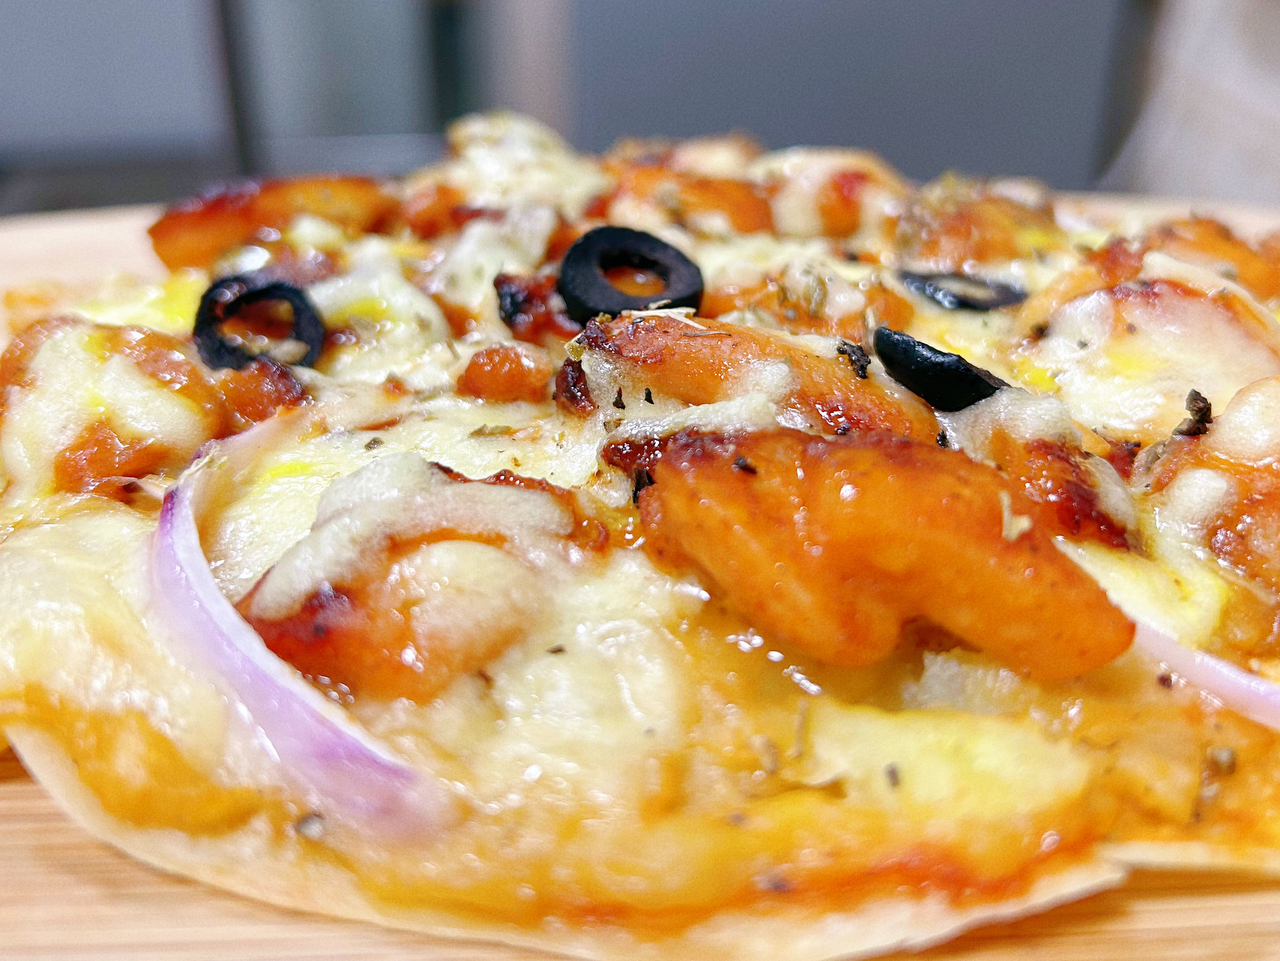 复制肯德基“K萨”
新奥尔良口味薄脆披萨的做法